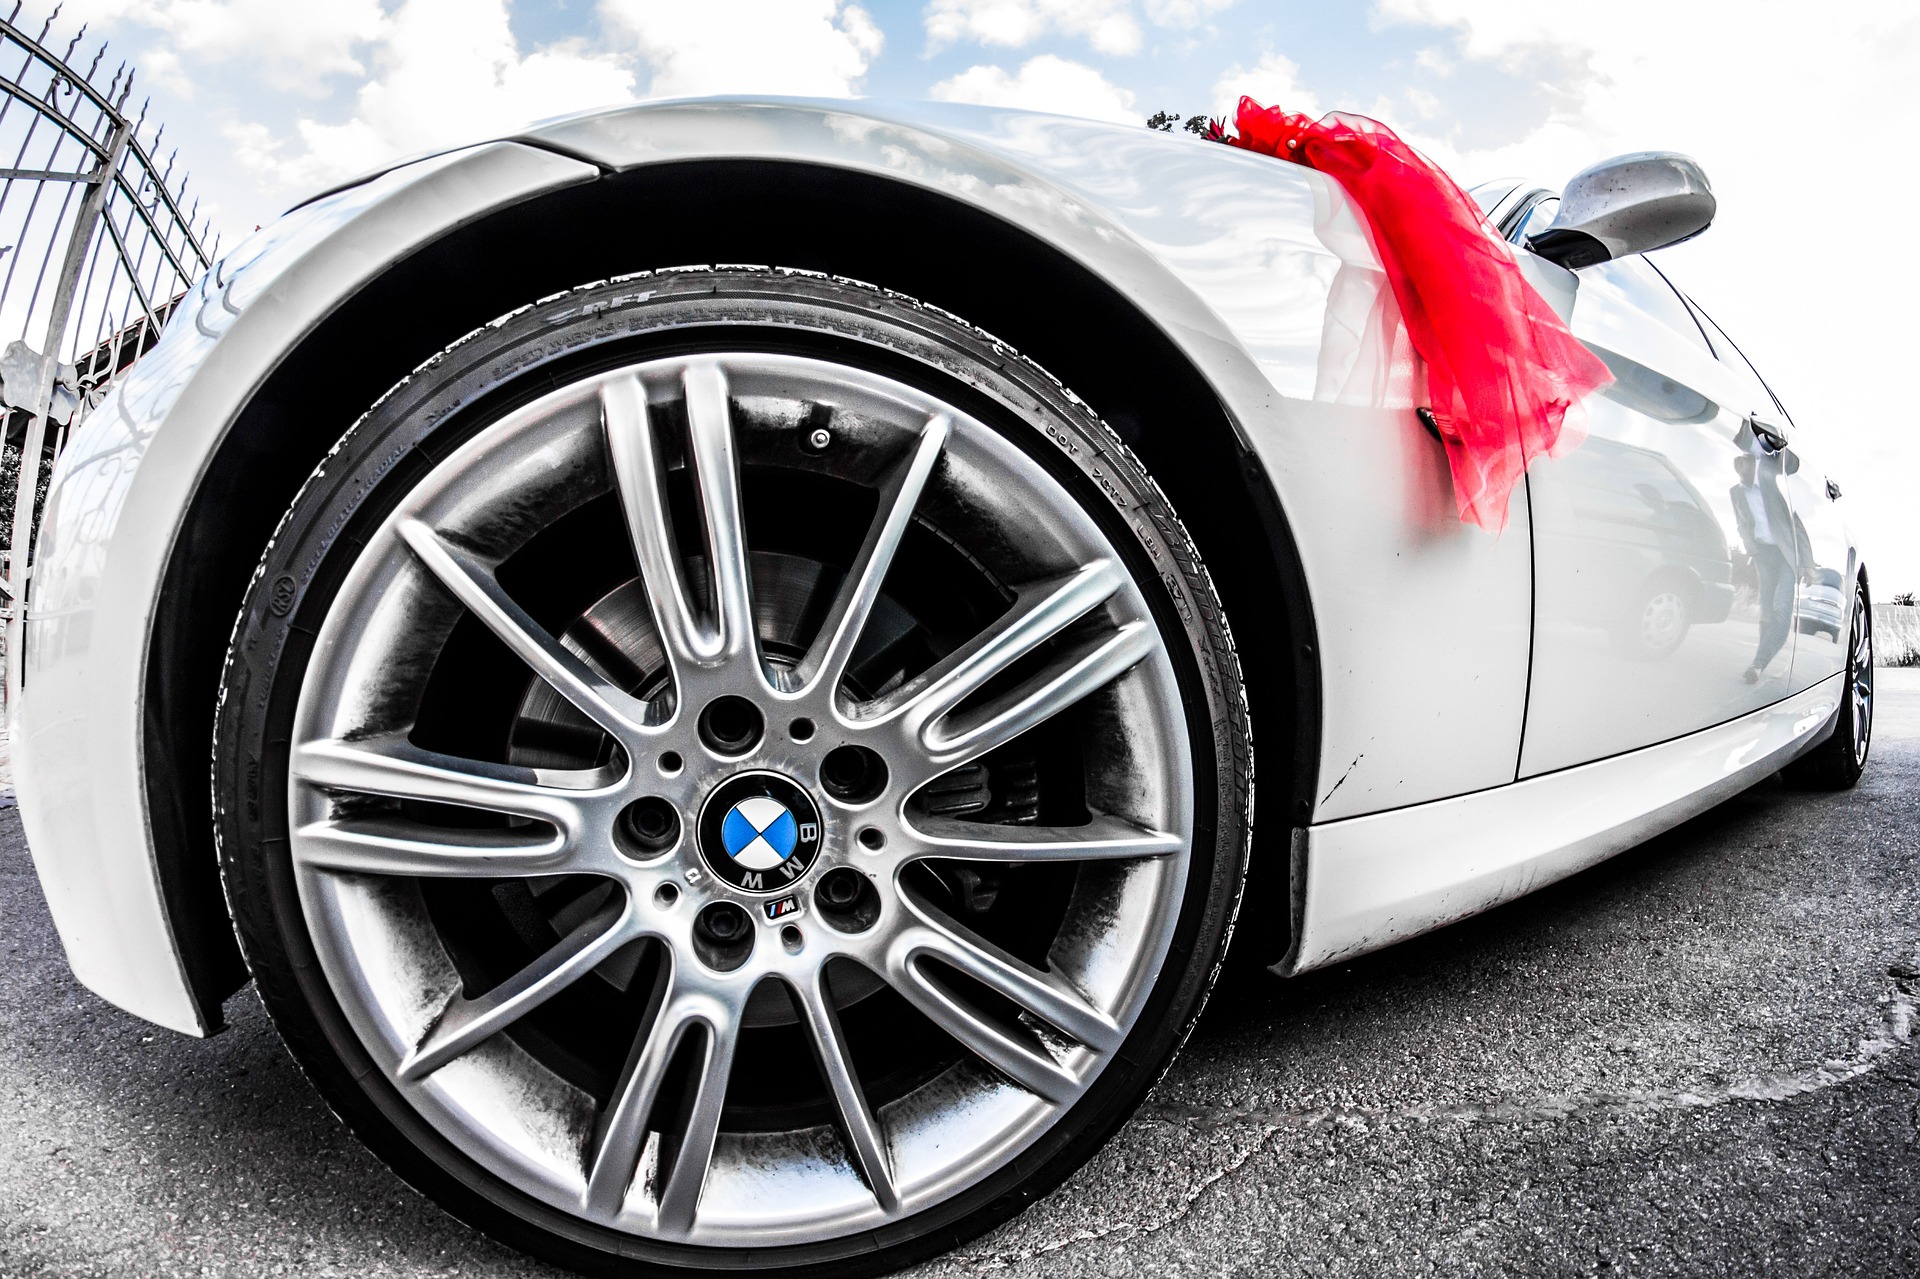 Bild eines Hochzeits BMW